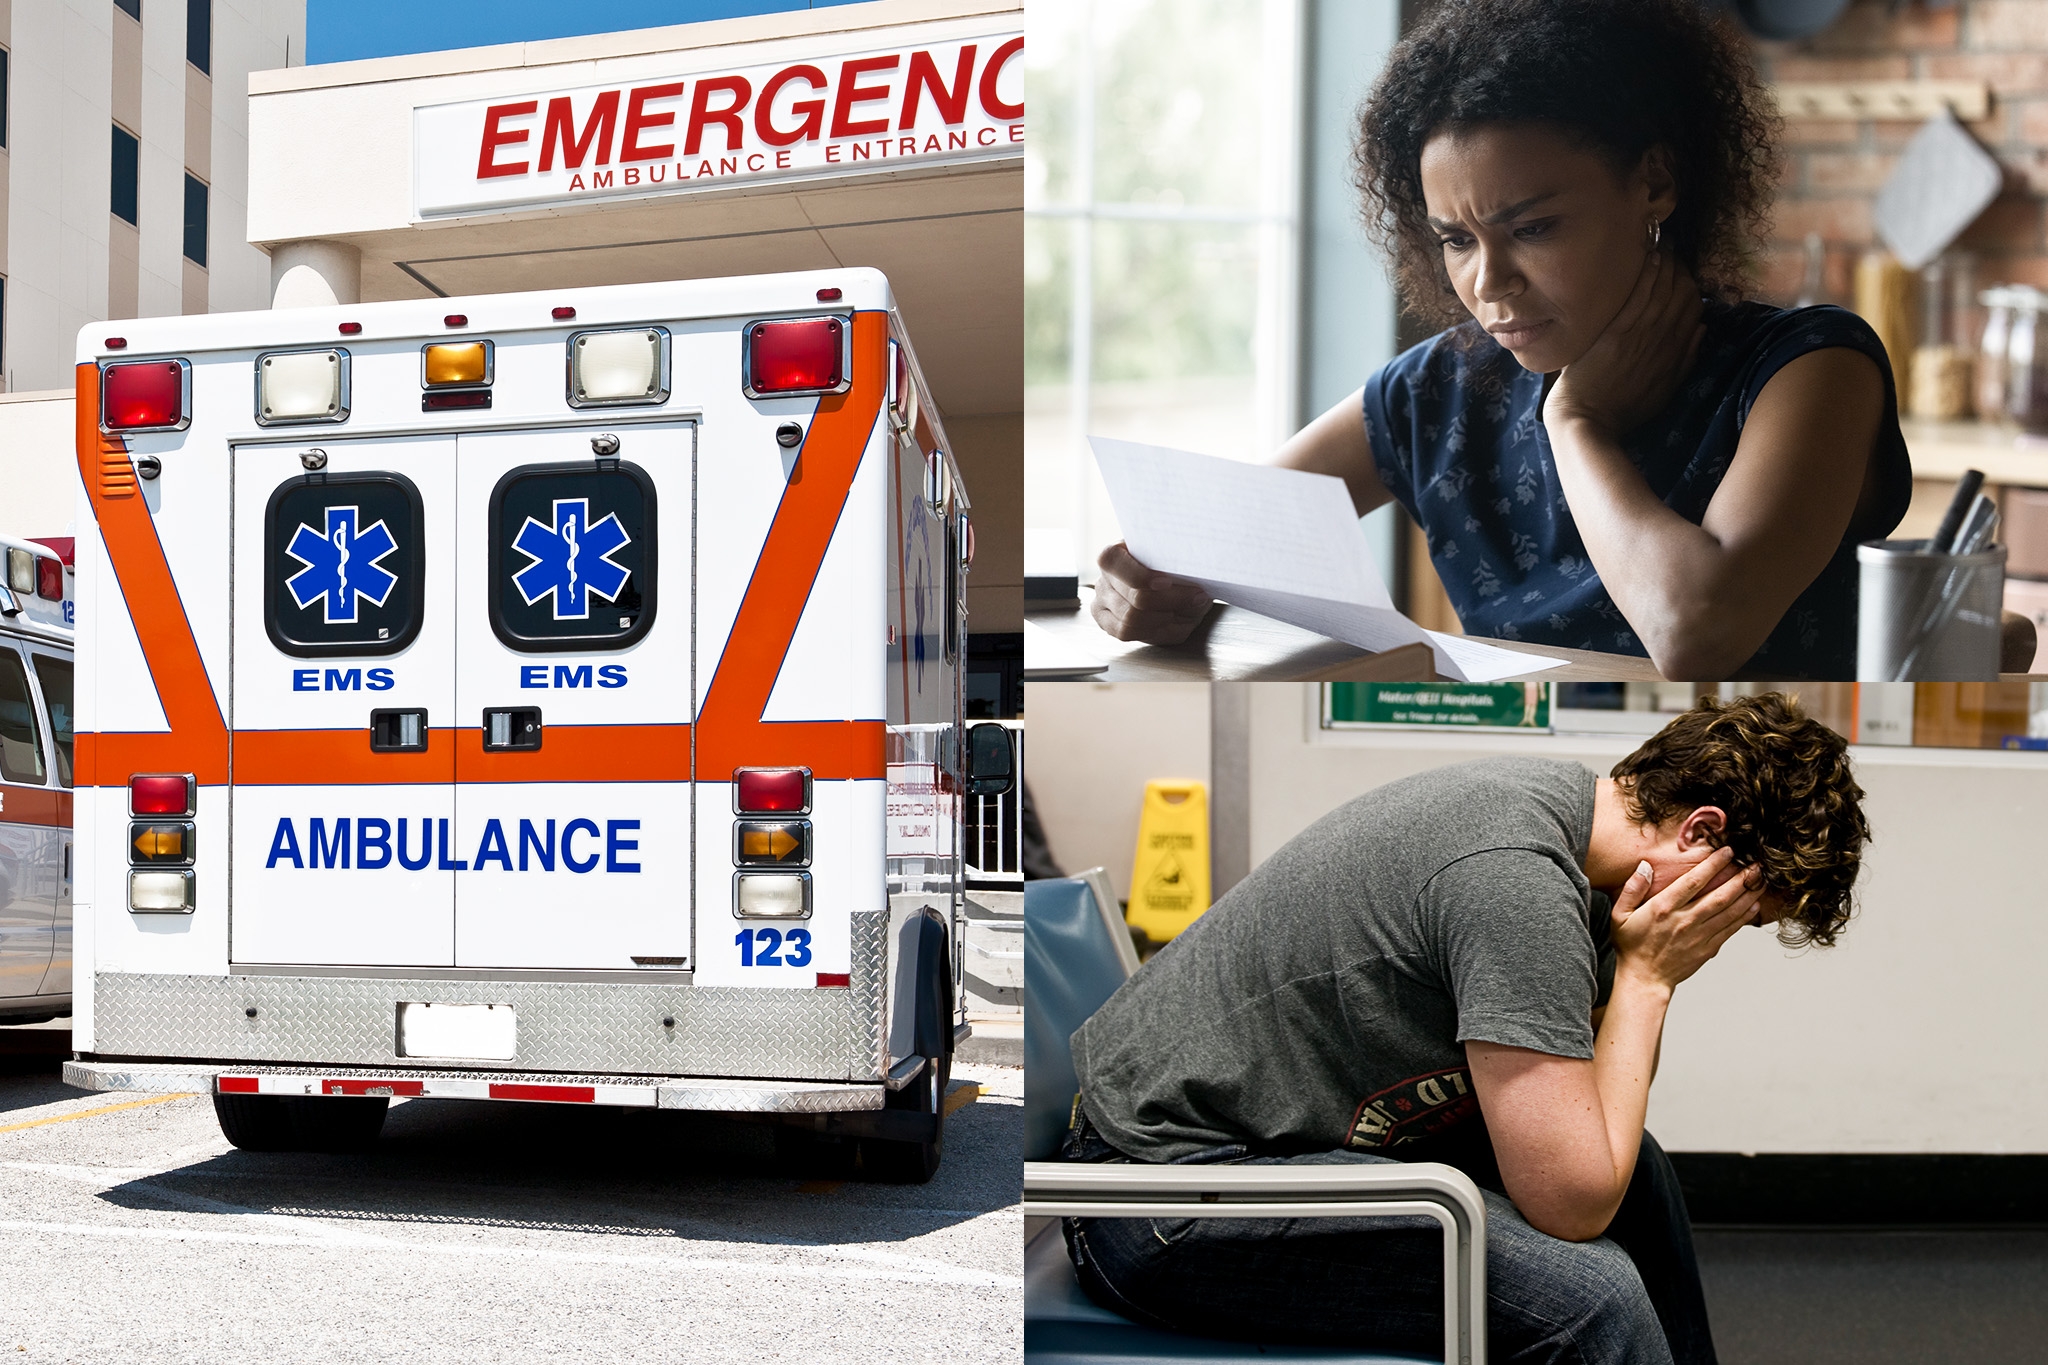 Collage de problemas de facturación de atención médica, incluida una ambulancia, una mujer revisando una factura y un hombre preocupado en la sala de espera de un hospital.